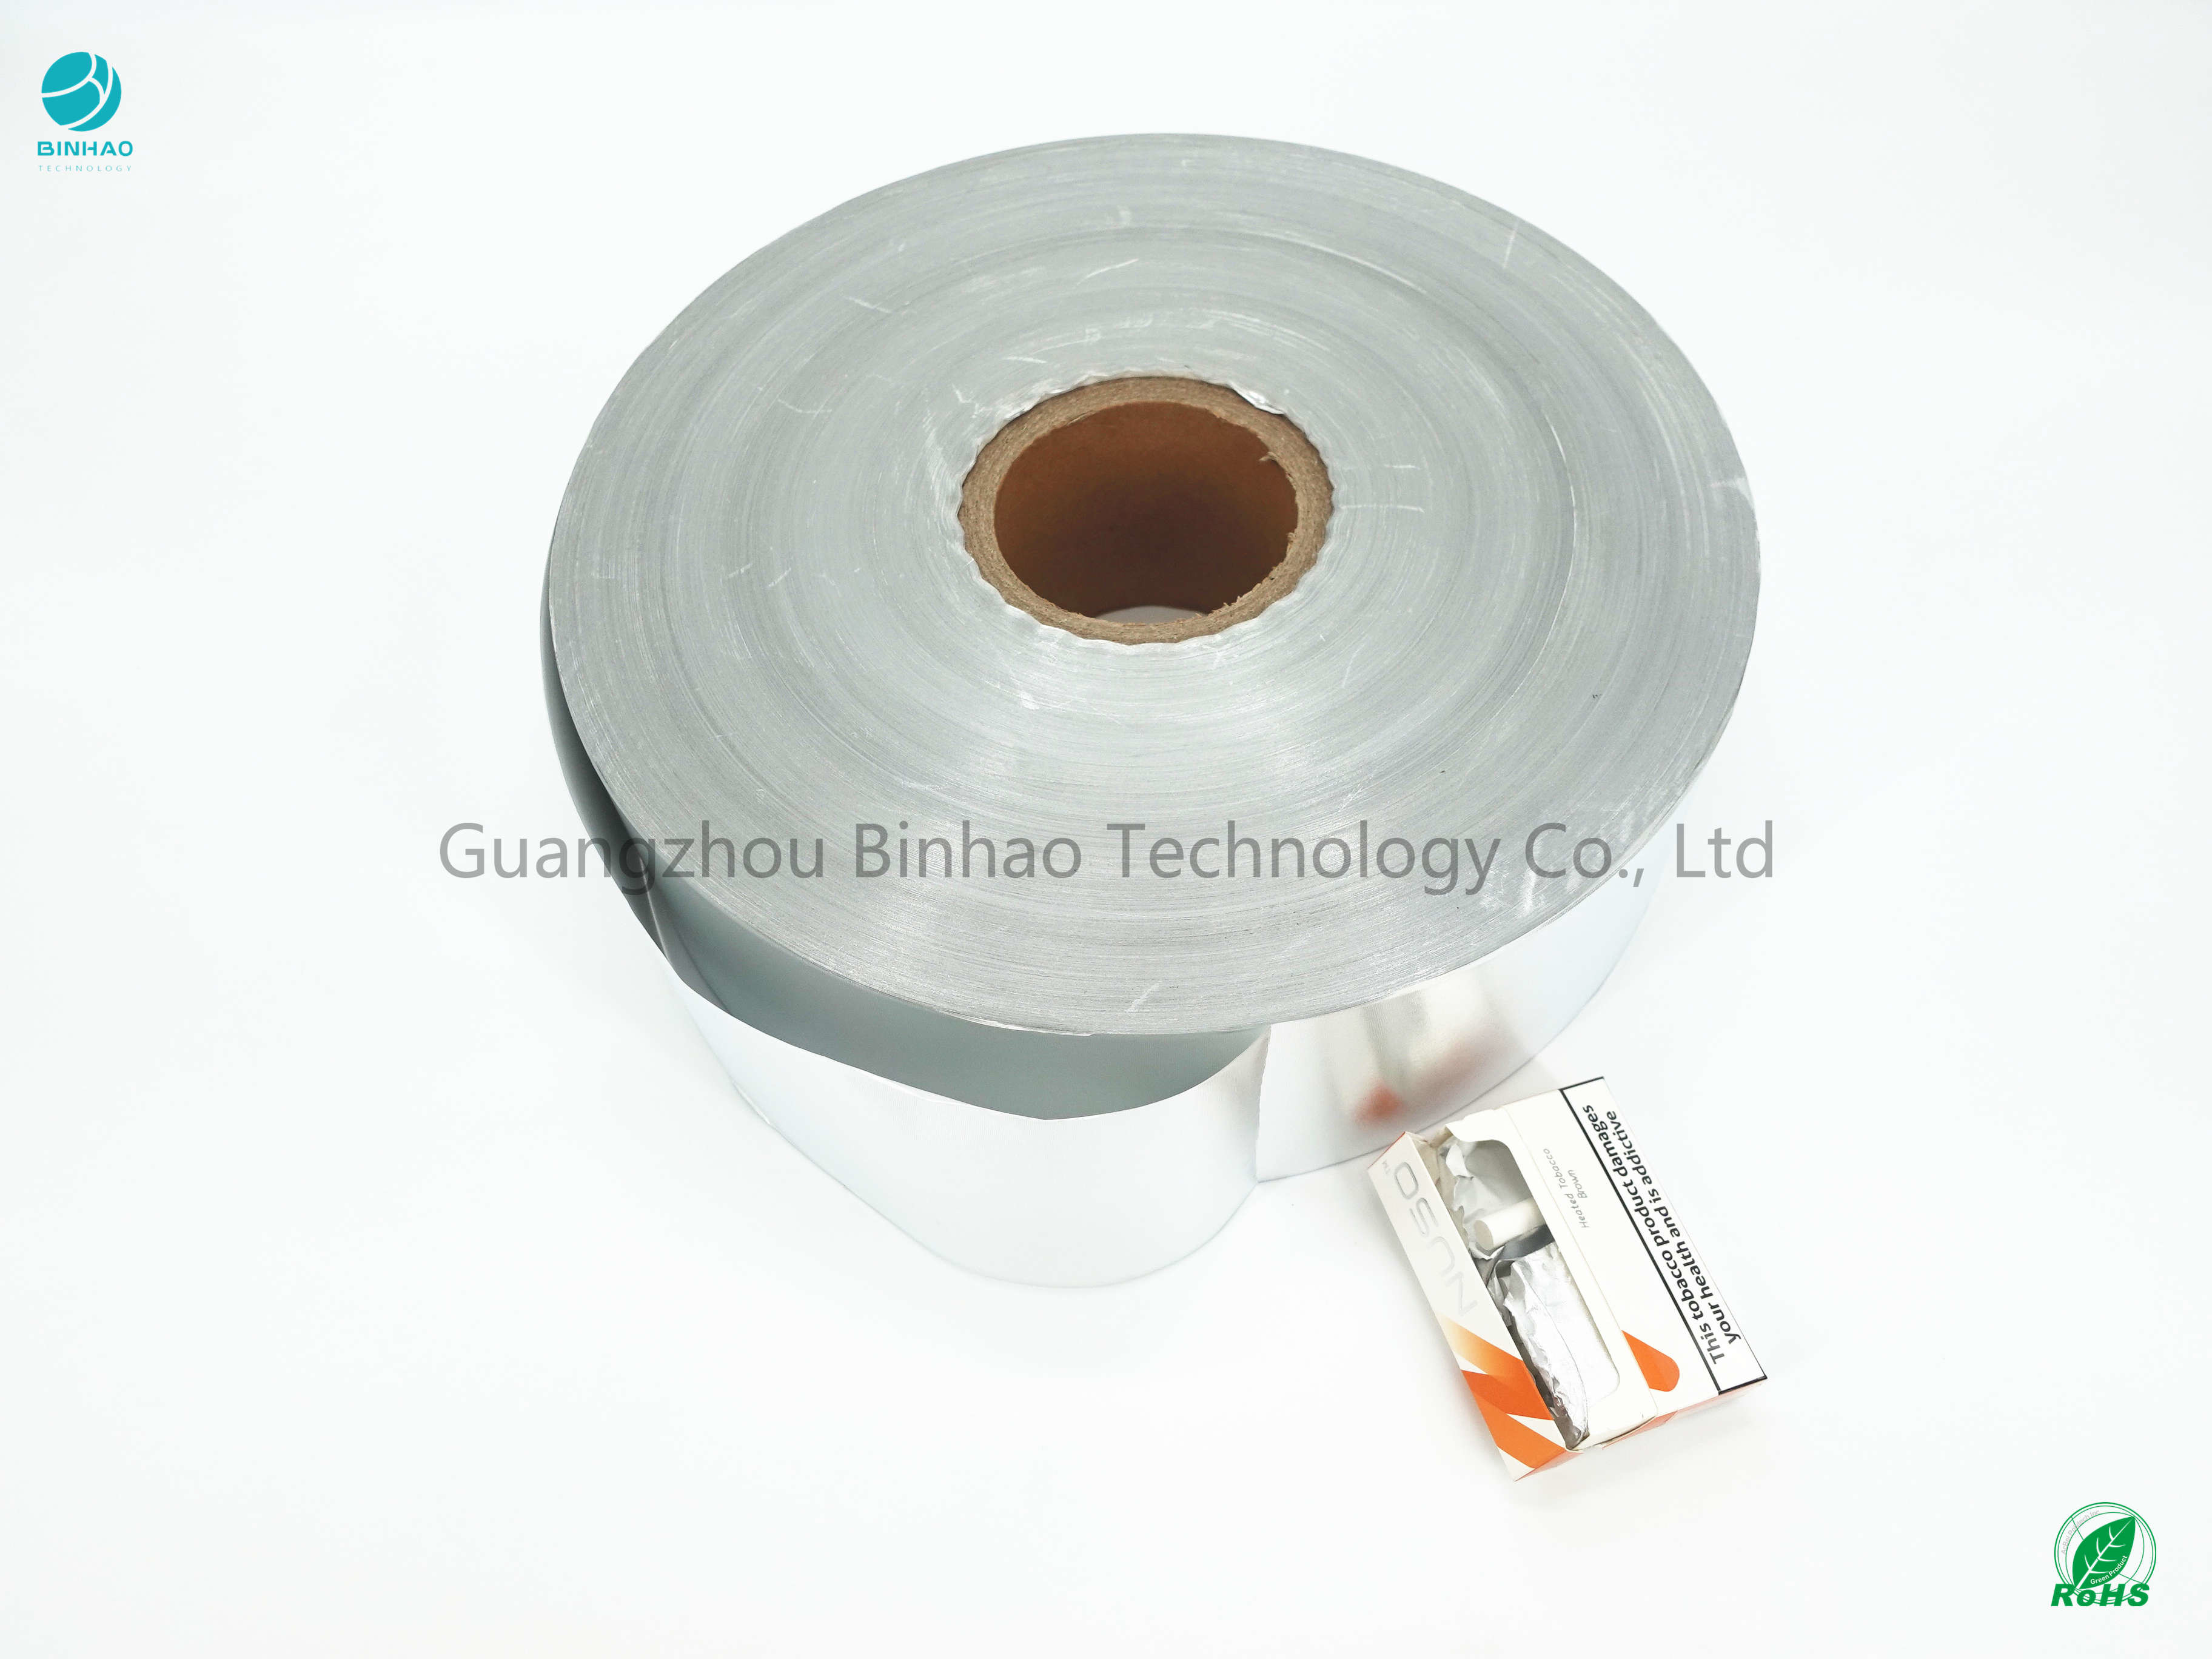 Il centro interno della carta 76mm del foglio di alluminio del prodotto del pacchetto della E-sigaretta di HNB